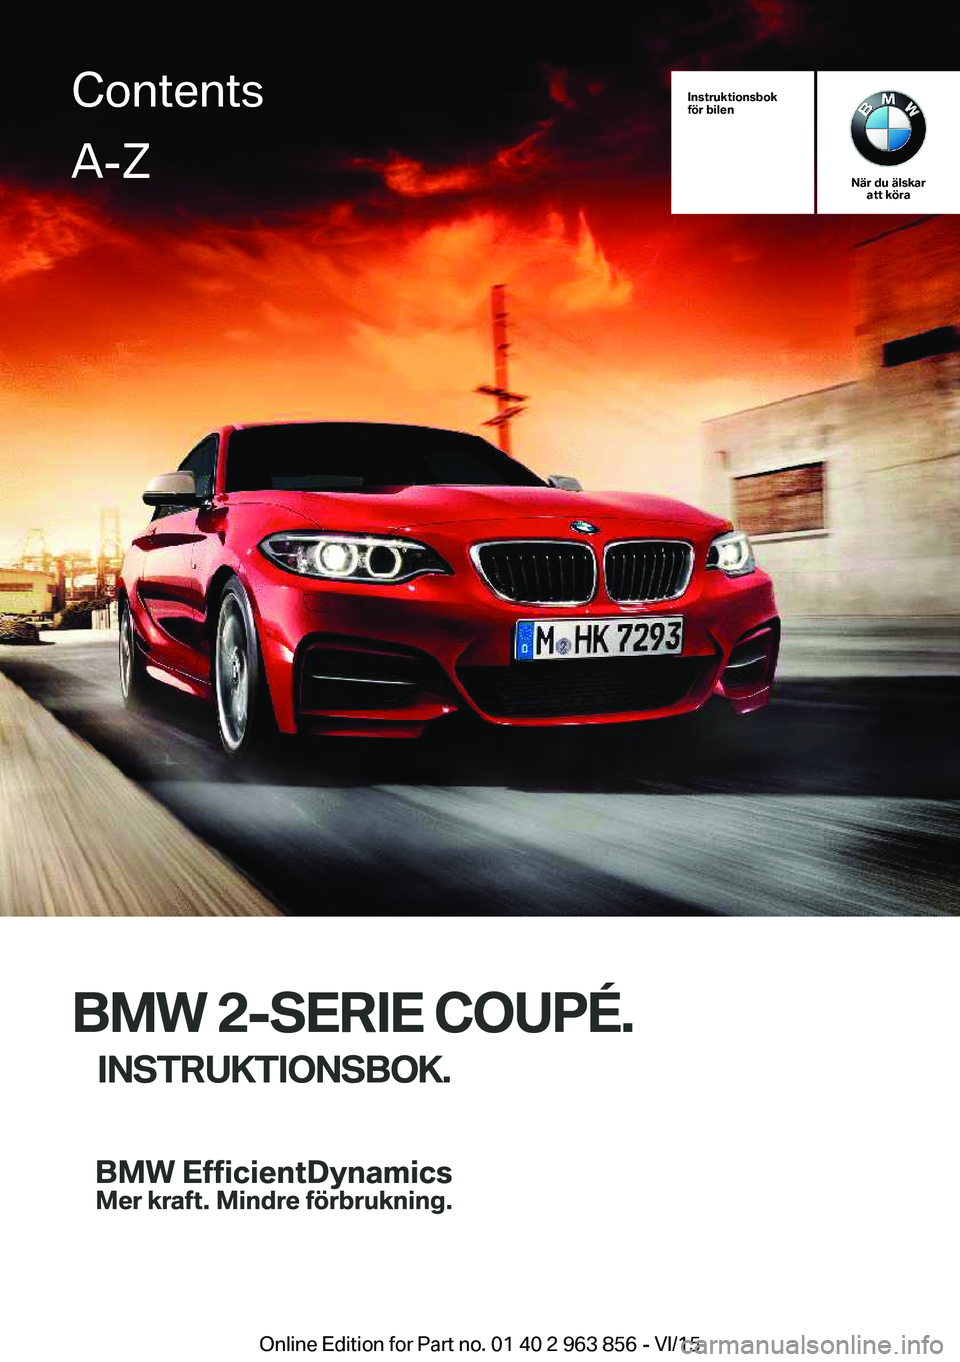 BMW 2 SERIES COUPE 2016  InstruktionsbÖcker (in Swedish) Instruktionsbok
för bilen
När du älskar att köra
BMW 2-SERIE COUPÉ.
INSTRUKTIONSBOK.
ContentsA-Z
Online Edition for Part no. 01 40 2 963 856 - VI/15   